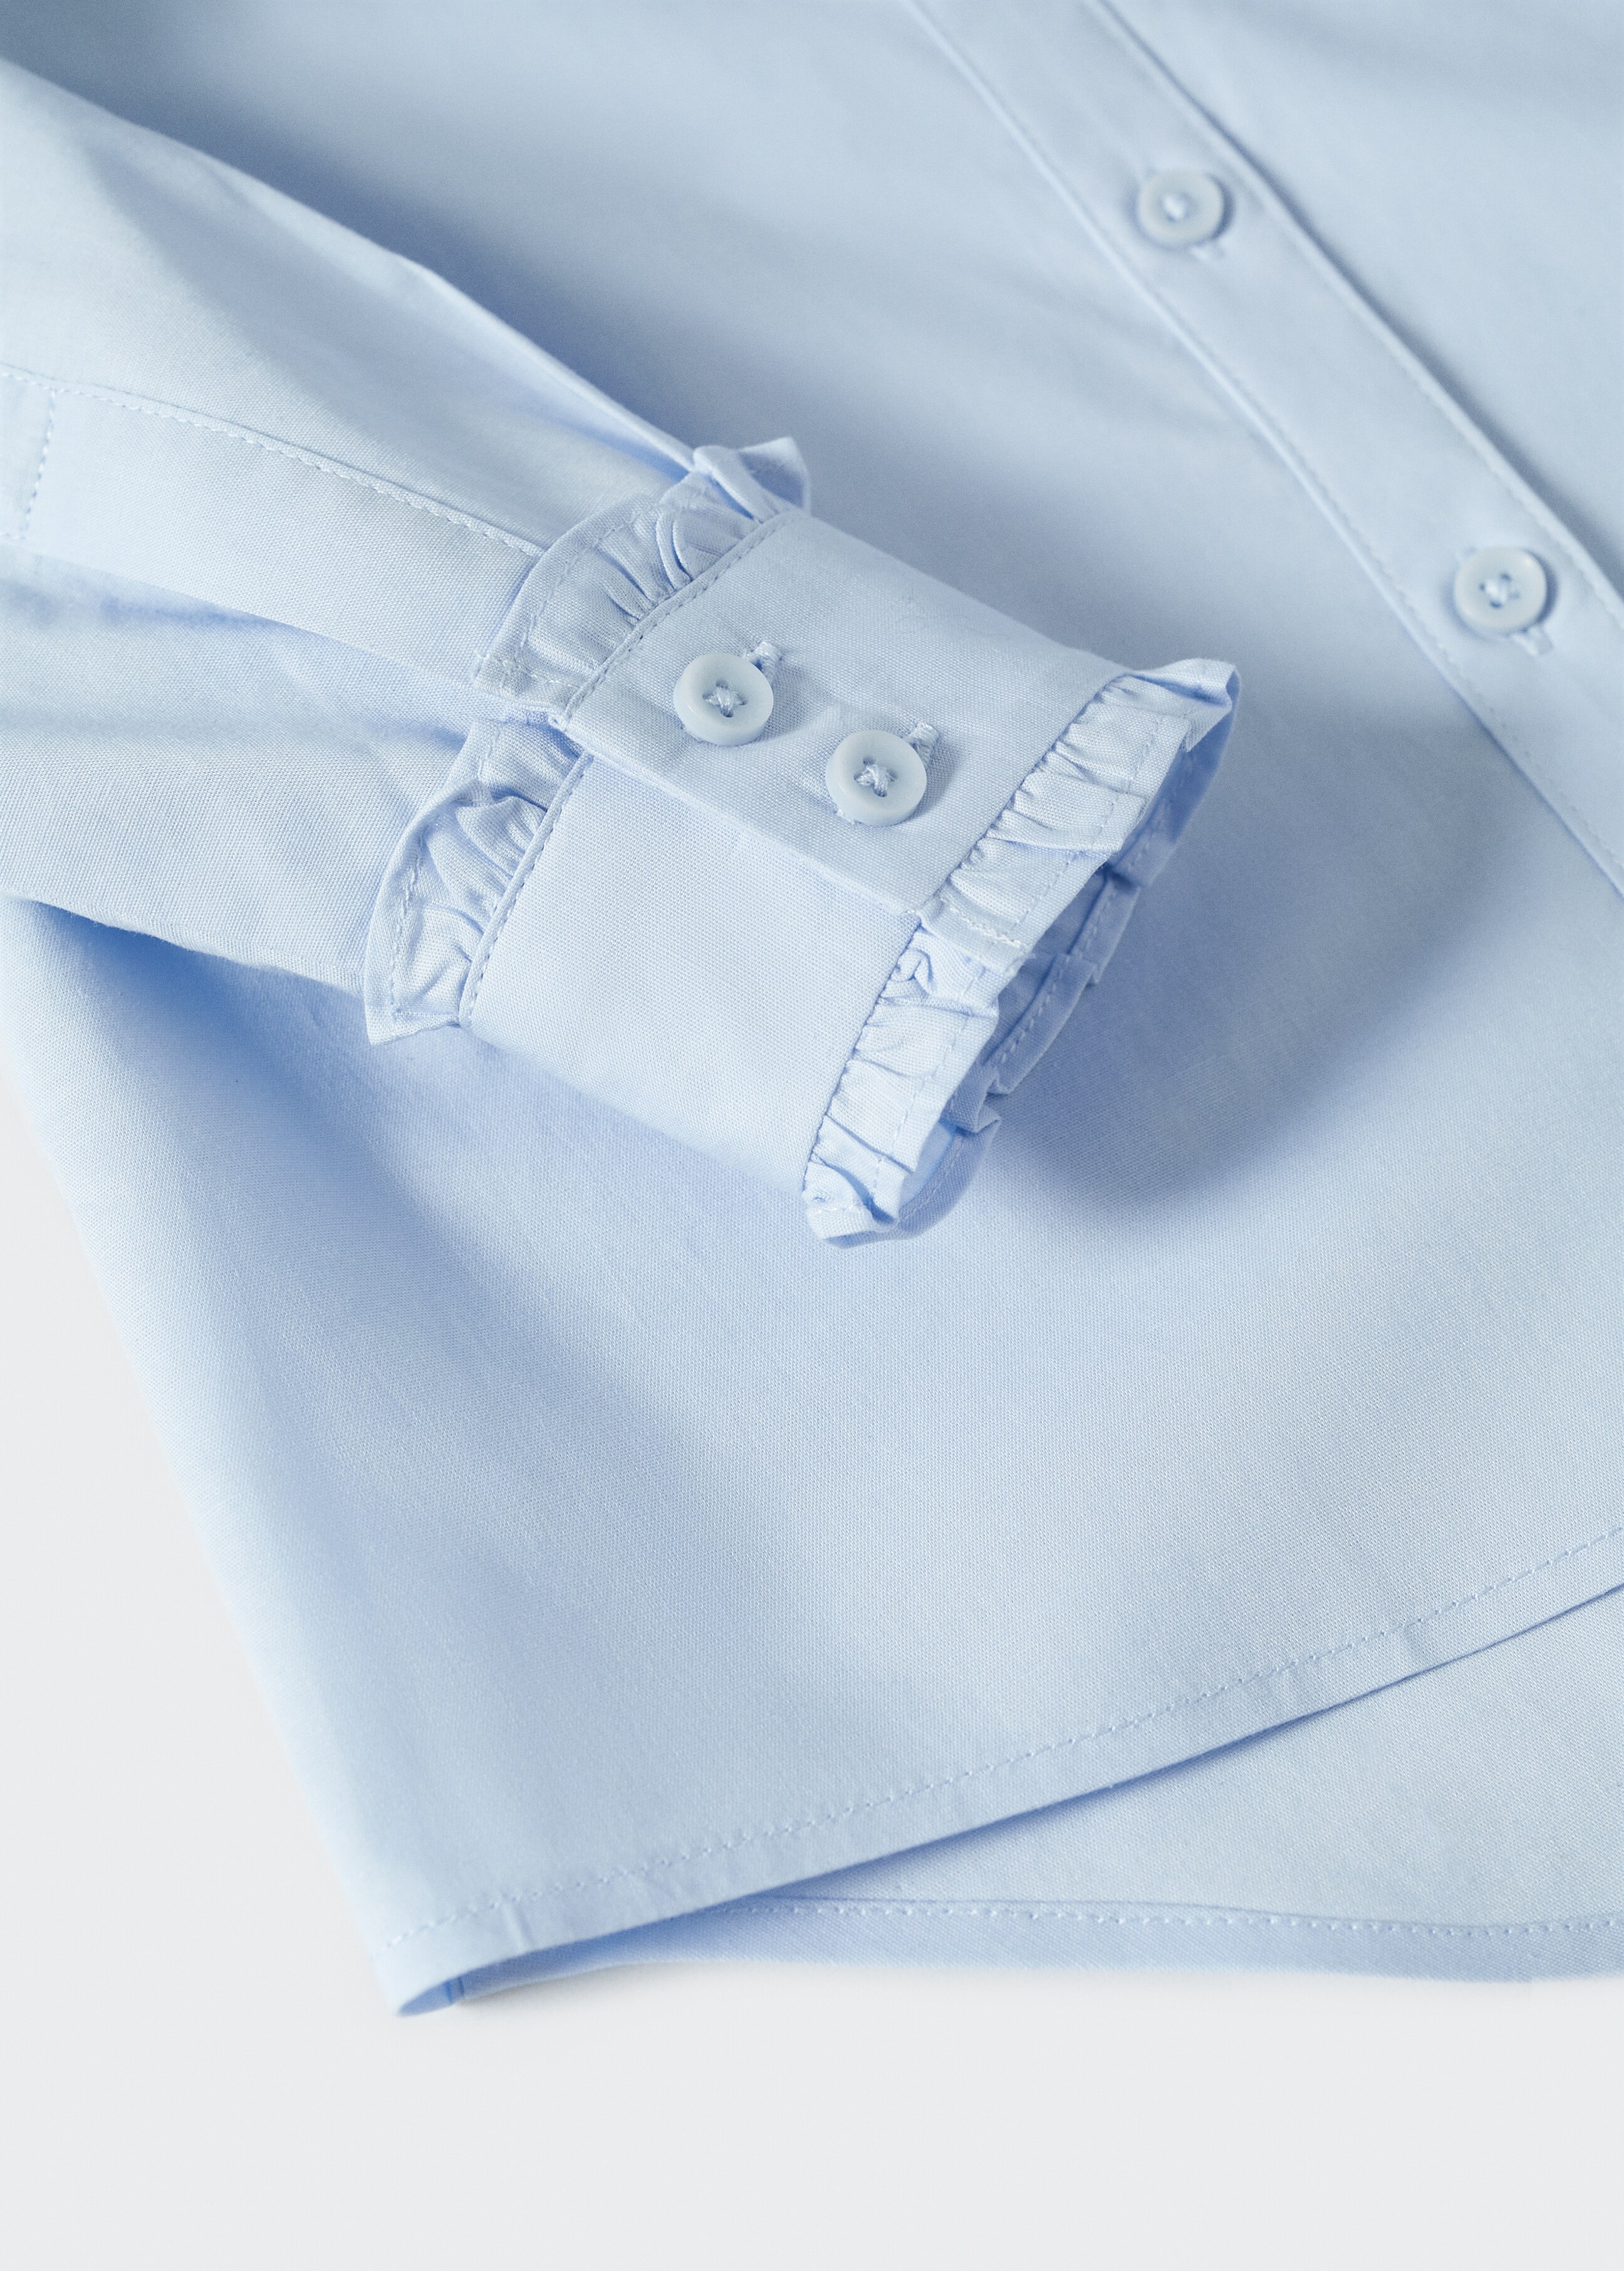 Camisa algodón manga abullonada - Detalle del artículo 8